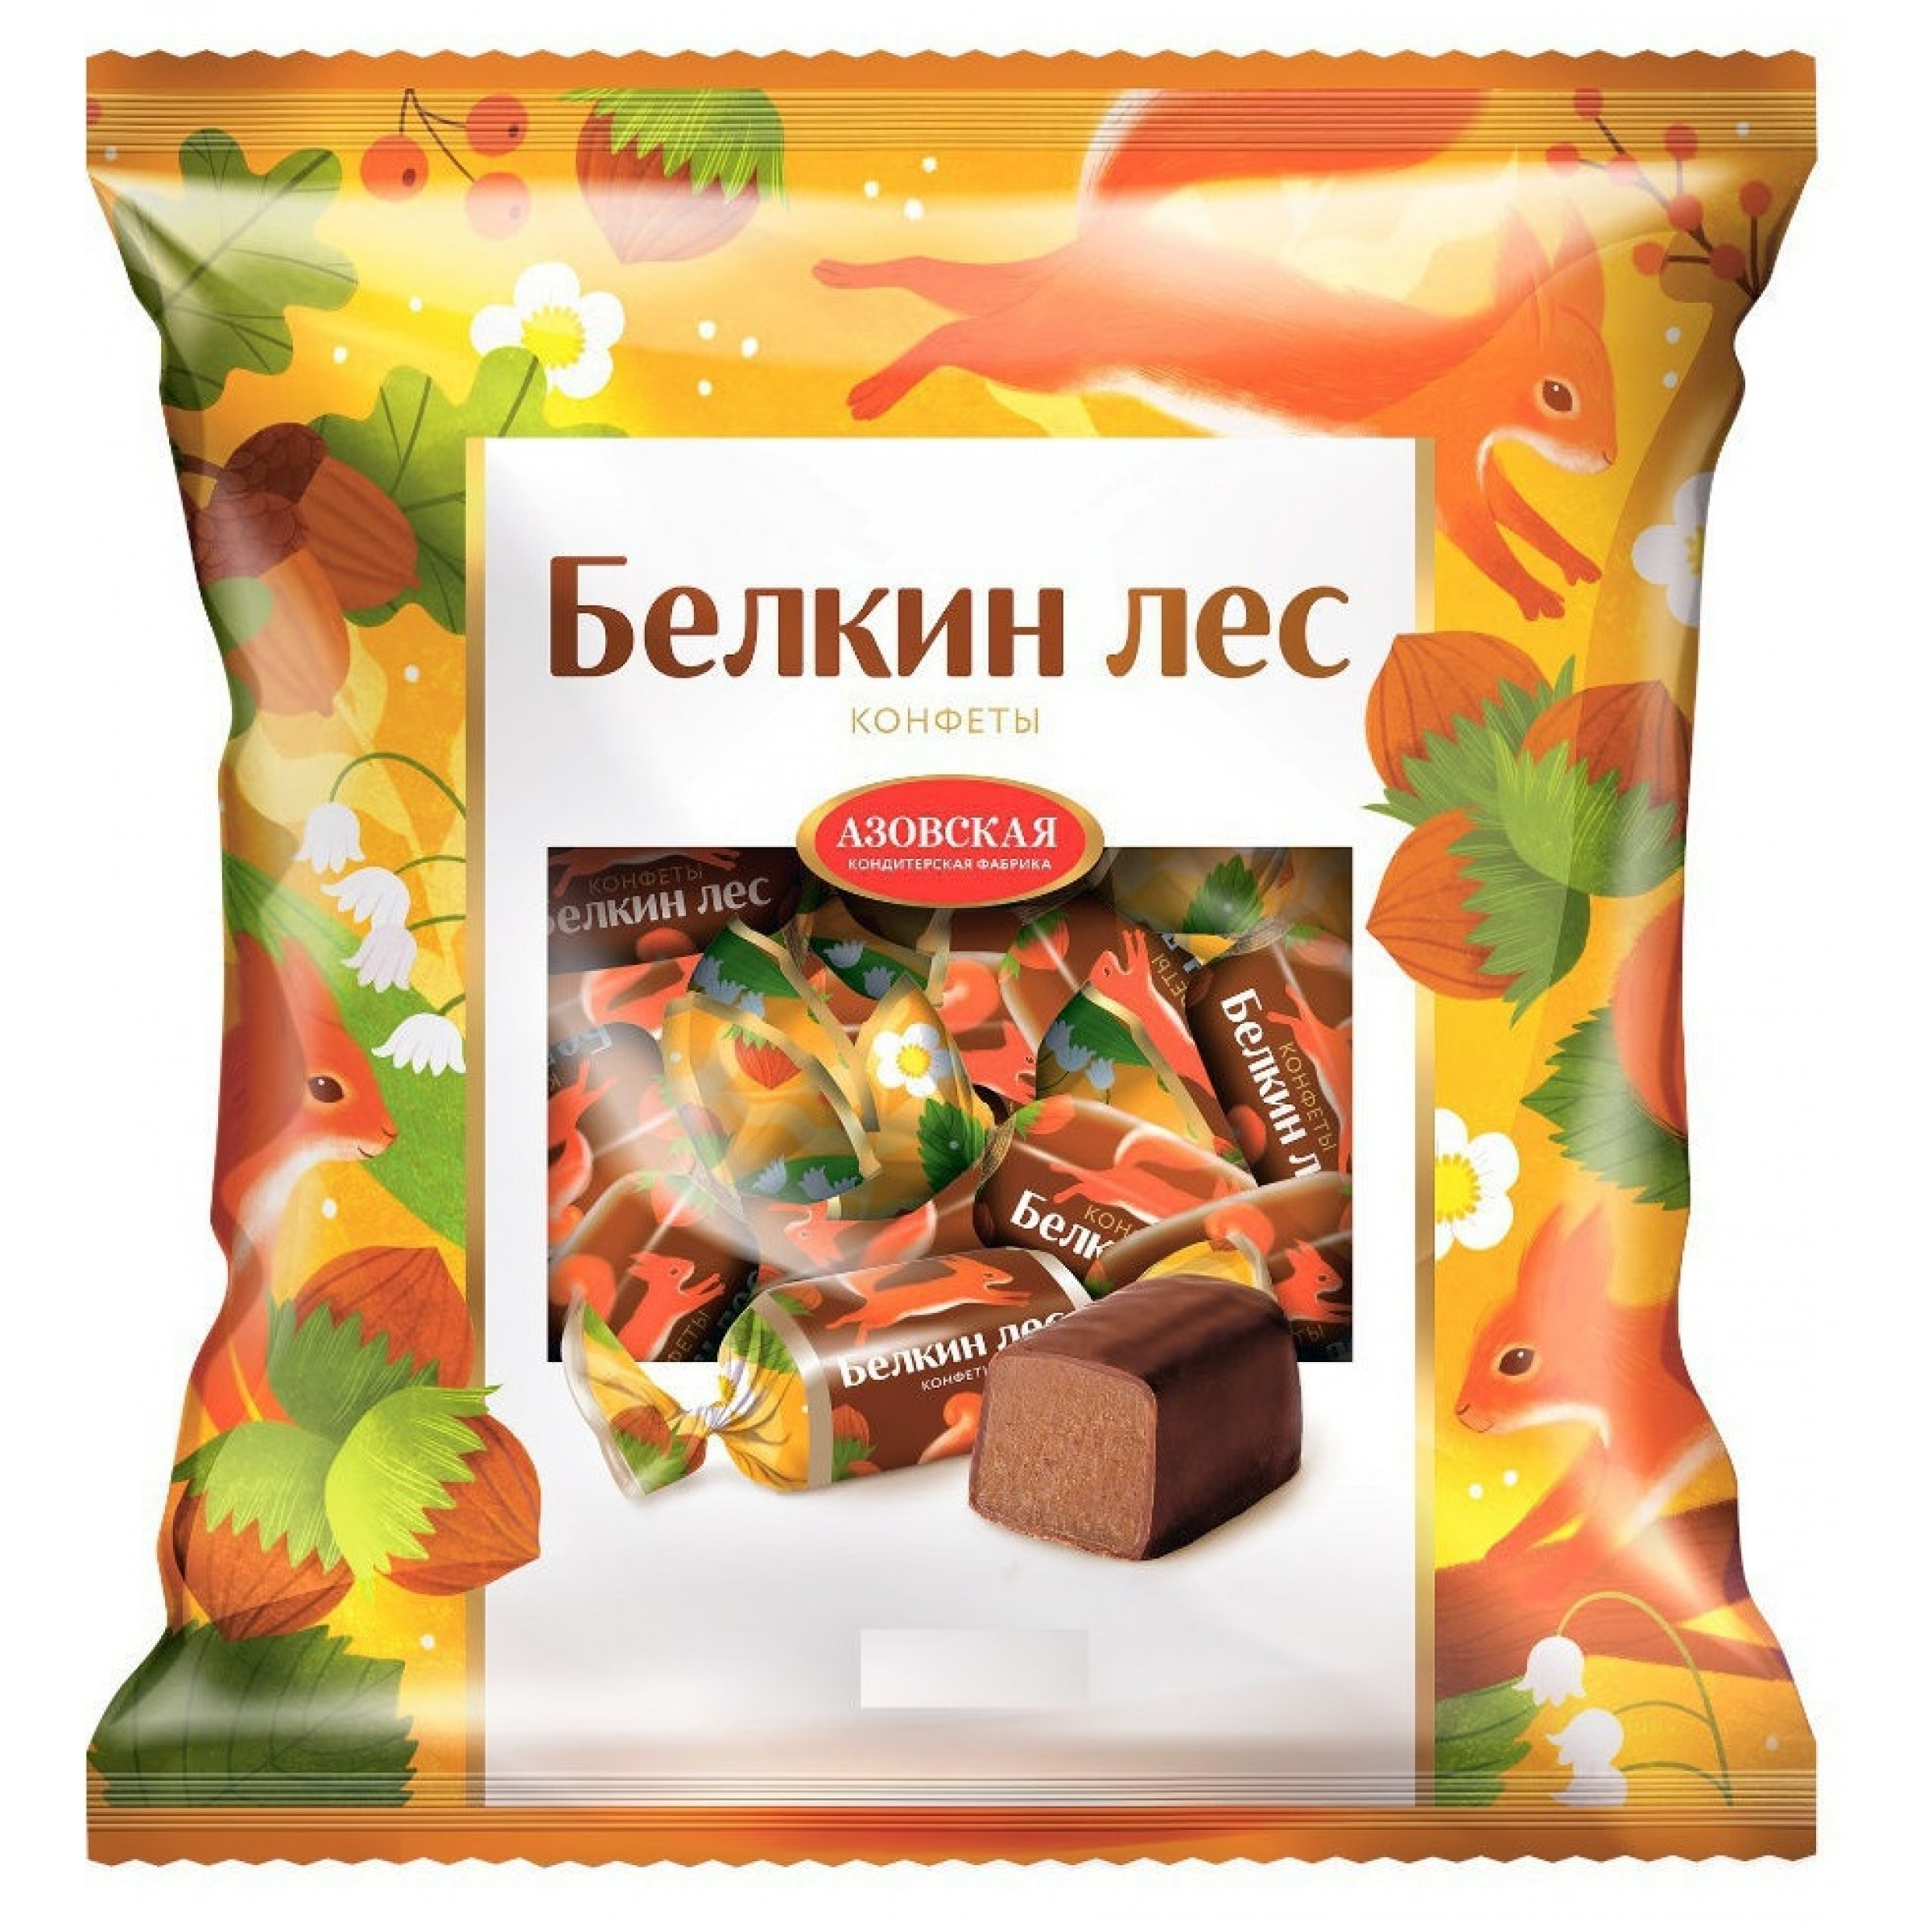 Глазированные помадные конфеты Белкин лес 250 г Азовская кондитерская фабрика